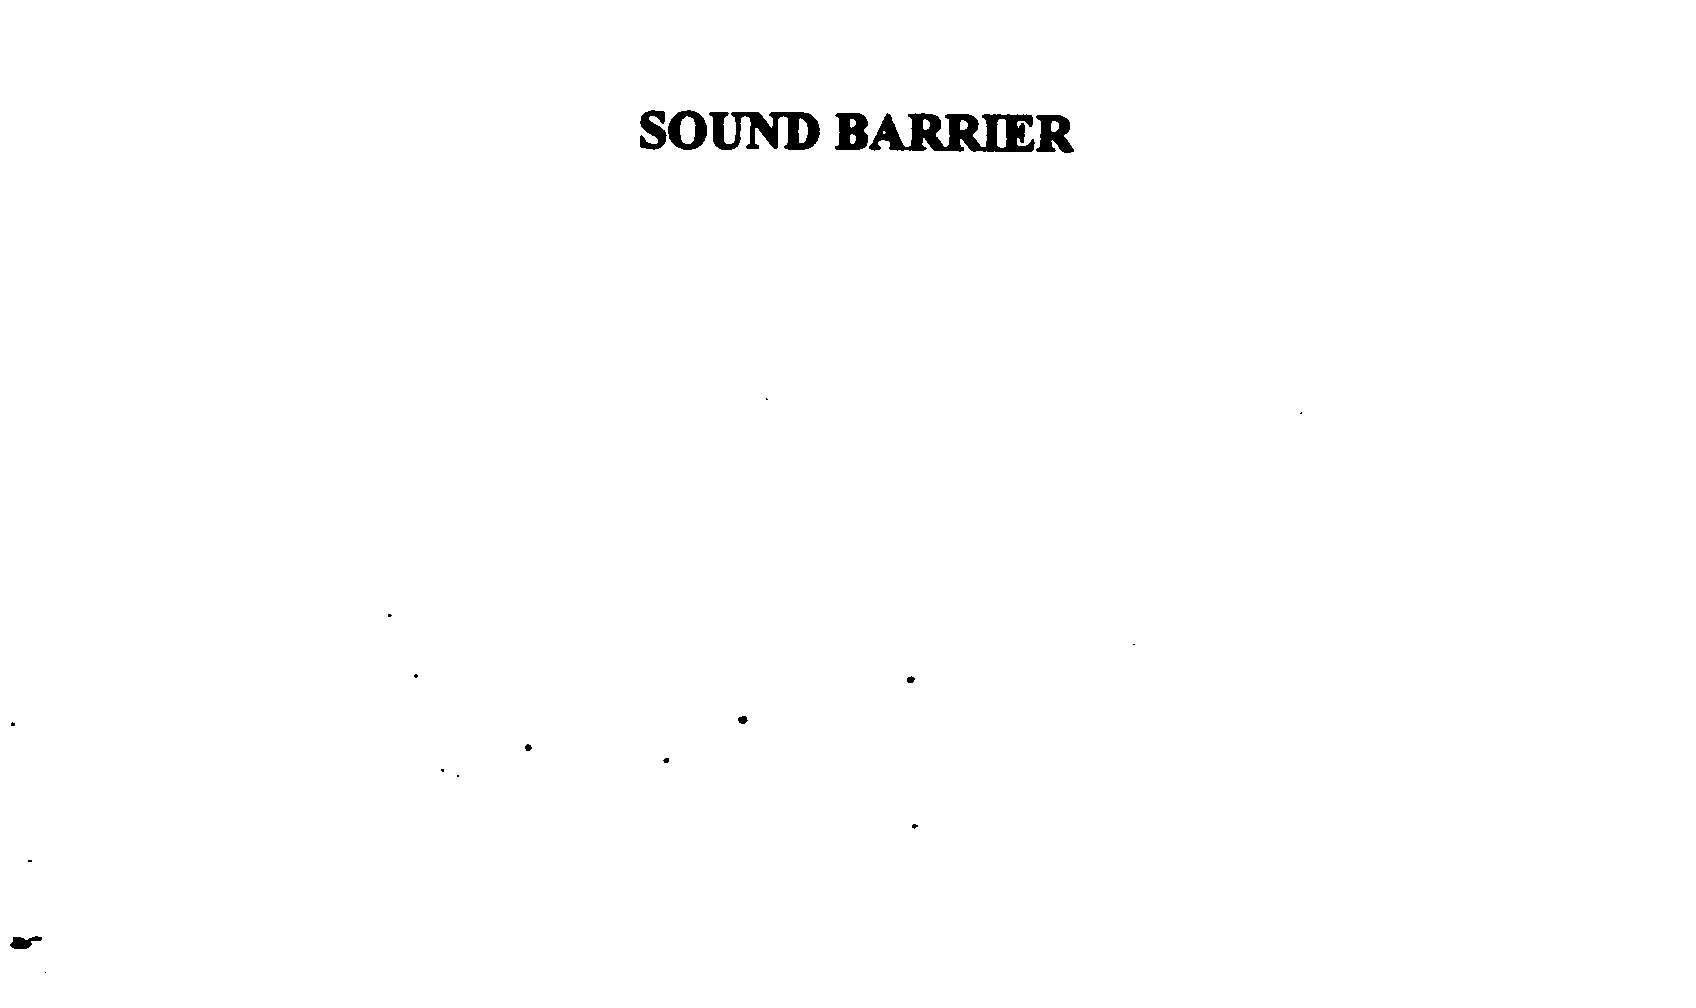  SOUND BARRIER